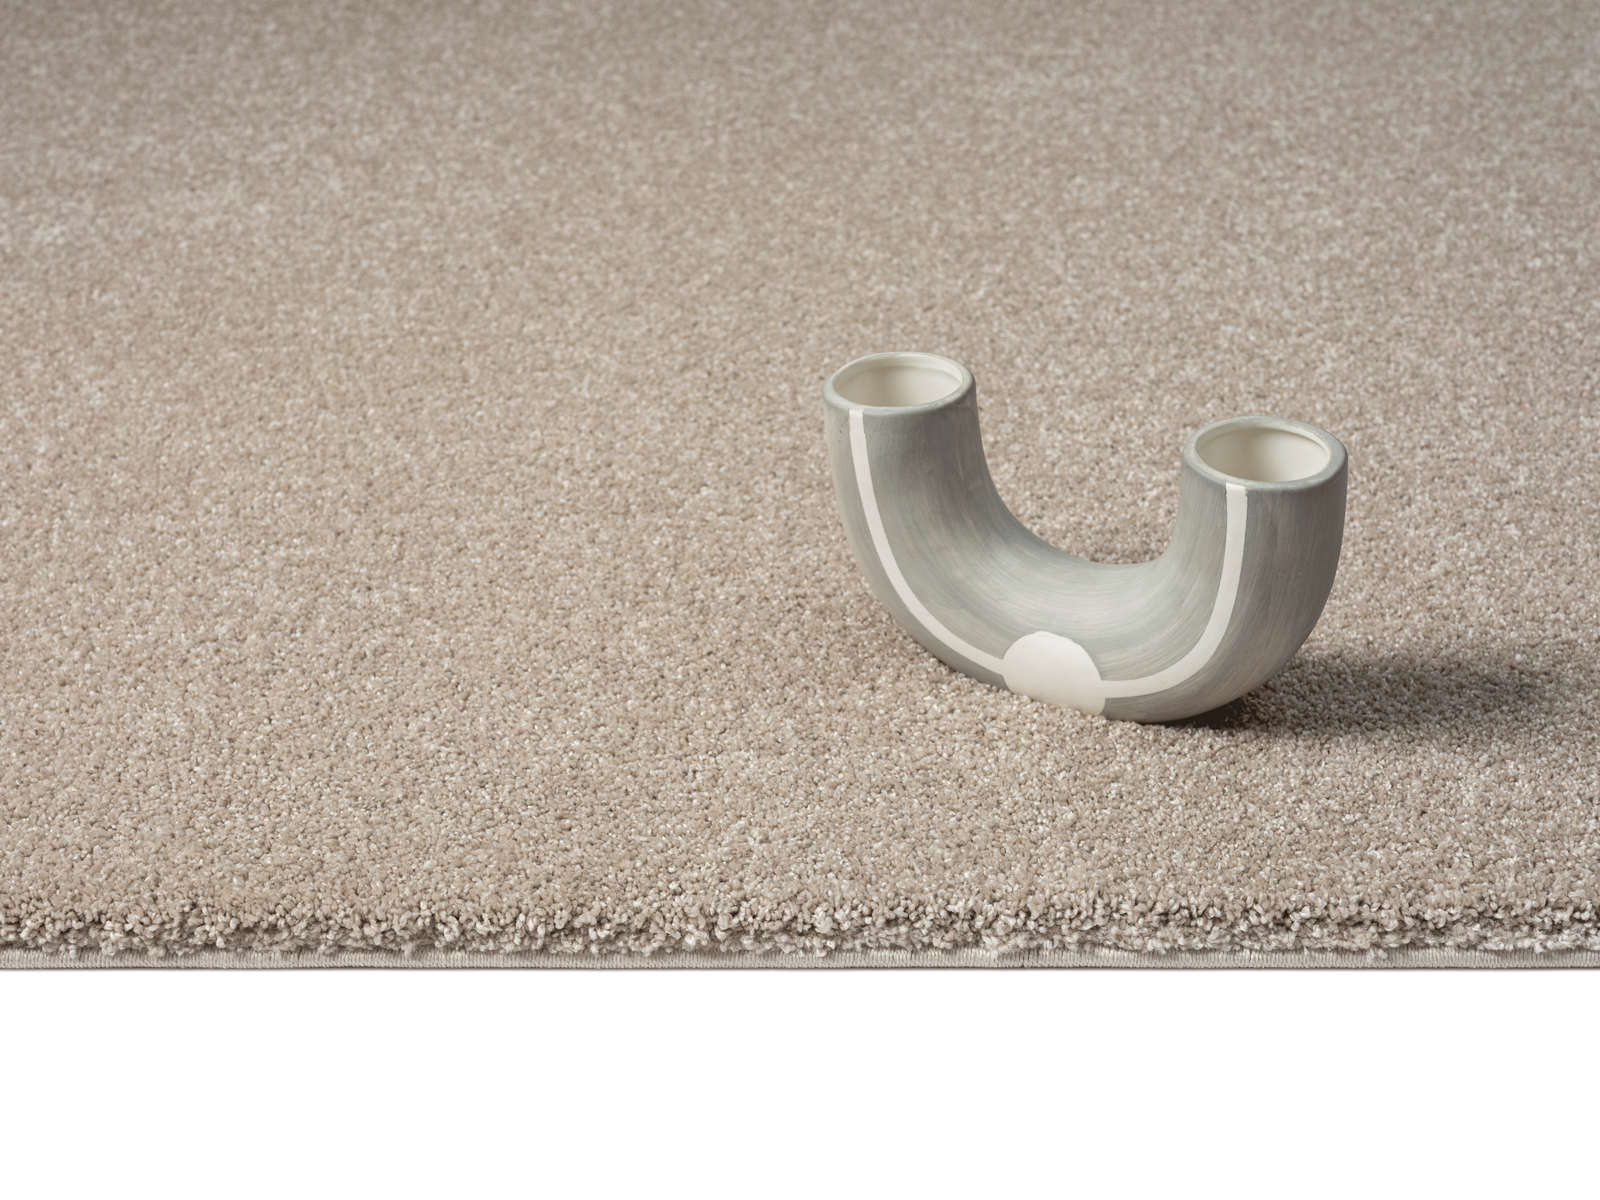             Zacht kortpolig tapijt in beige - 110 x 60 cm
        